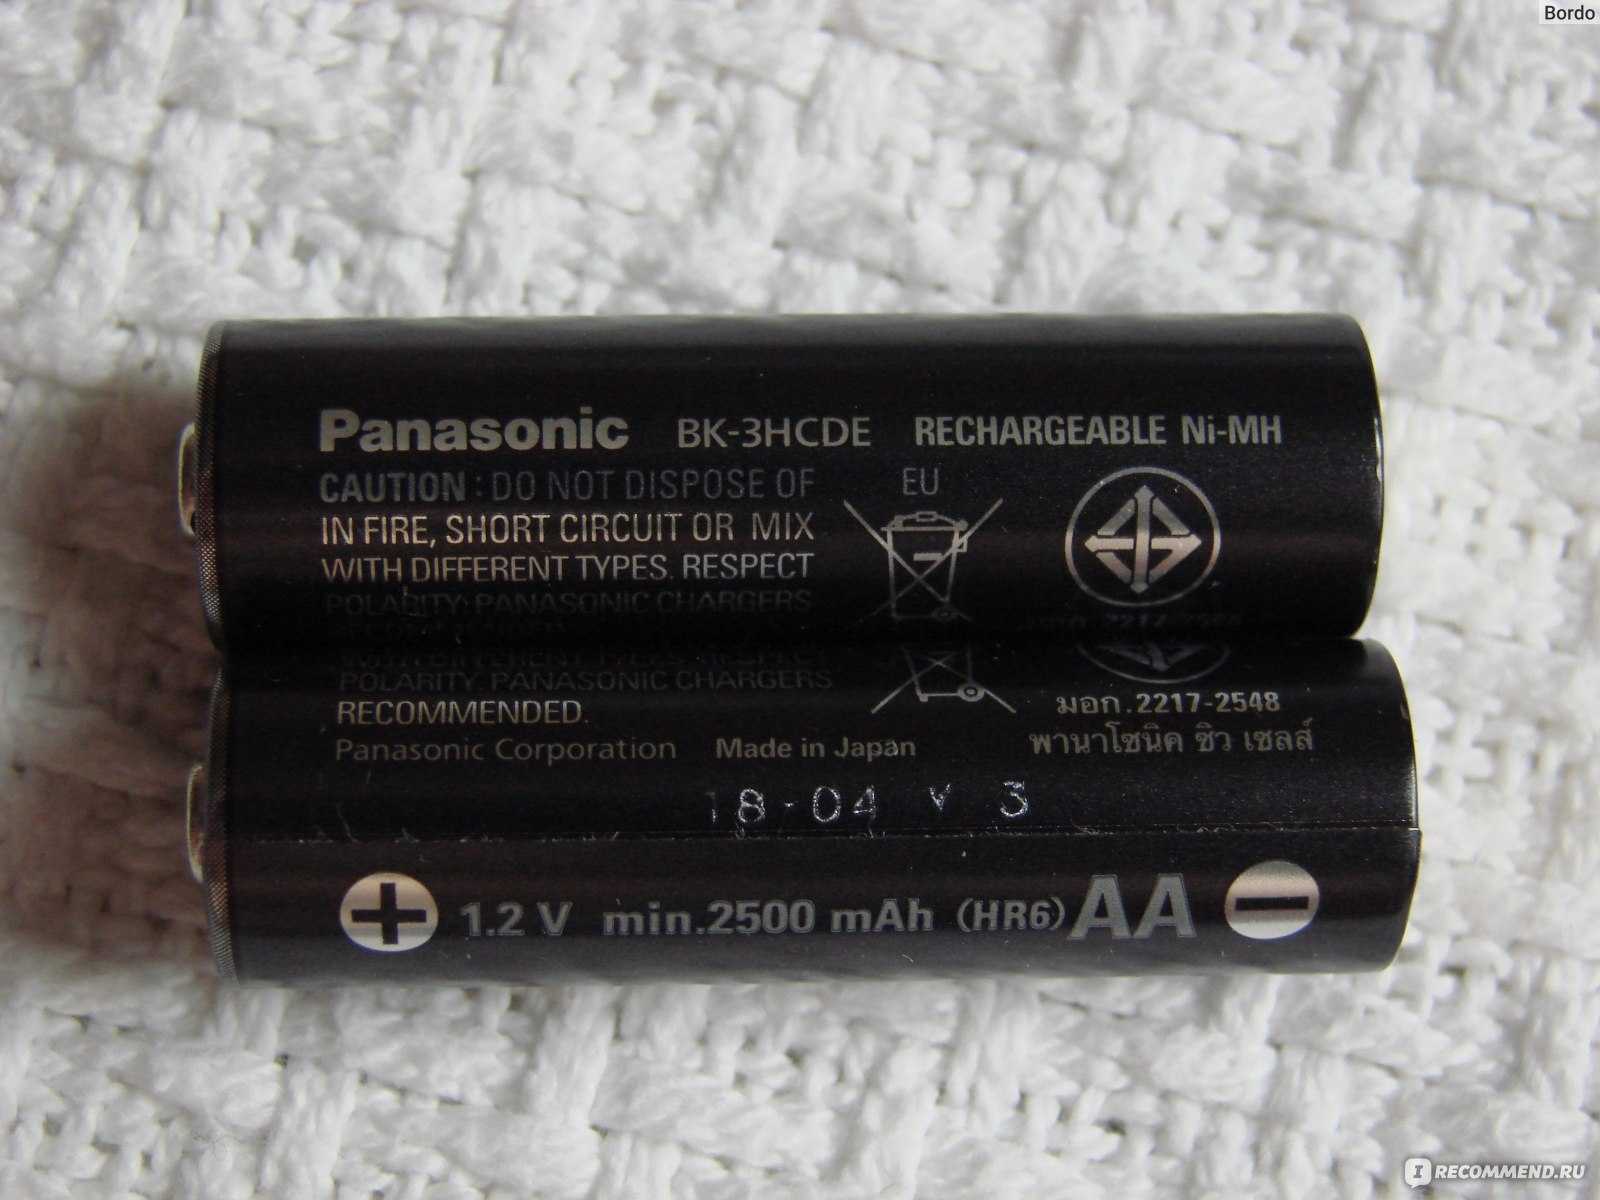 Panasonic Eneloop Pro 2500 mAh АА - короткий но максимально информативный обзор Для большего удобства добавлены характеристики отзывы и видео